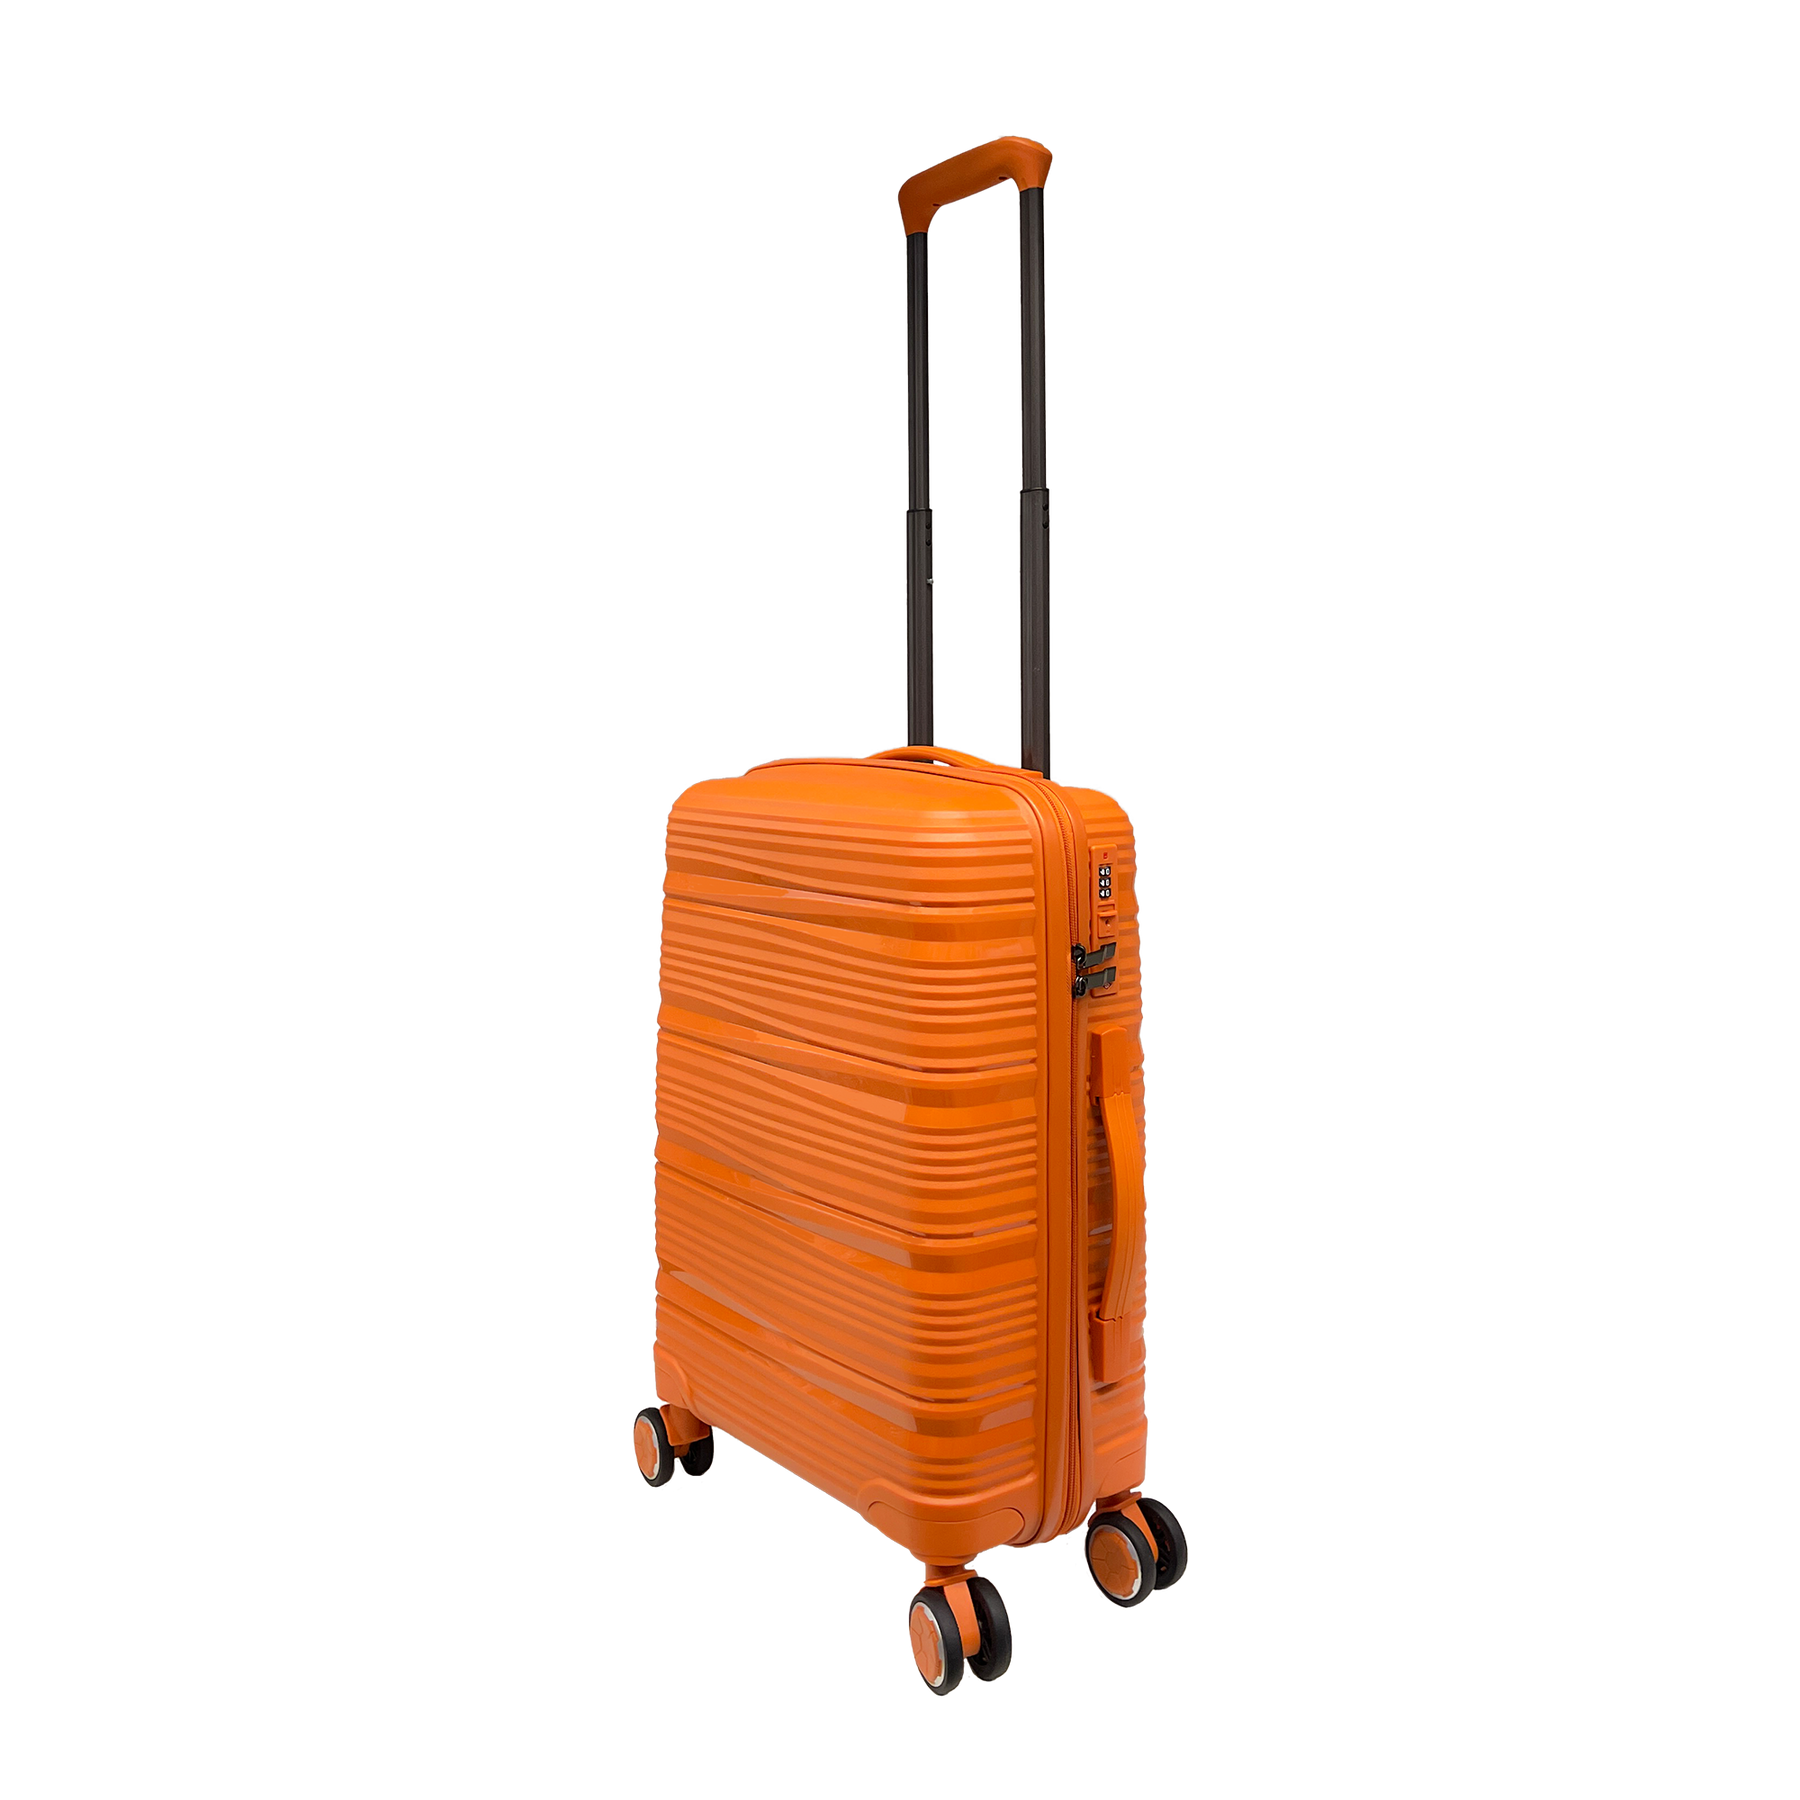 Vibrant Voyager: Hardshell Spinner Carry-On in Tangerine - 360° Wheels and TSA Lock